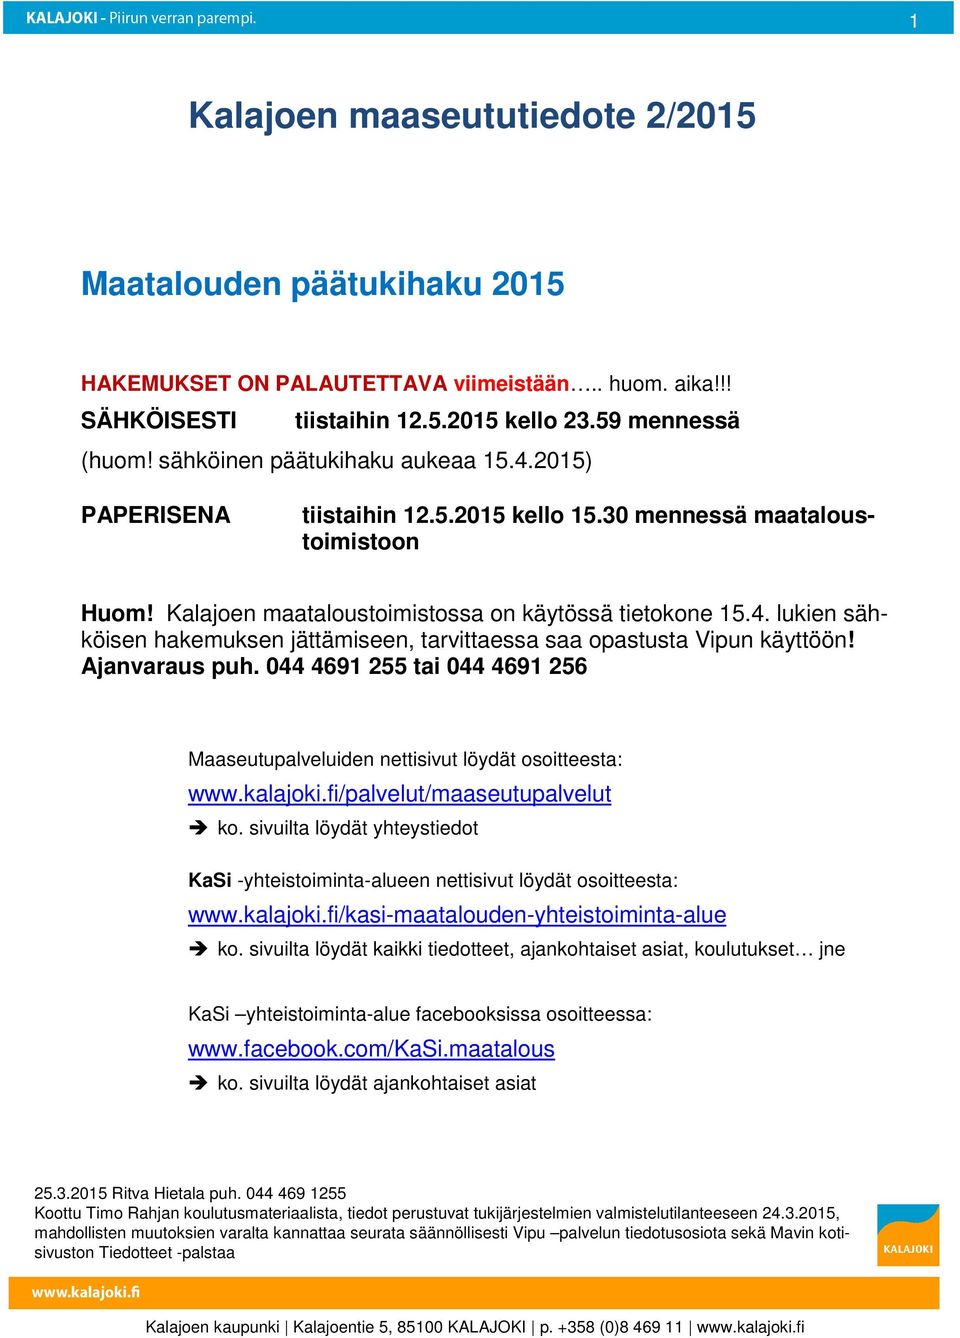 Ajanvaraus puh. 044 4691 255 tai 044 4691 256 Maaseutupalveluiden nettisivut löydät sitteesta: www.kalajki.fi/palvelut/maaseutupalvelut k.